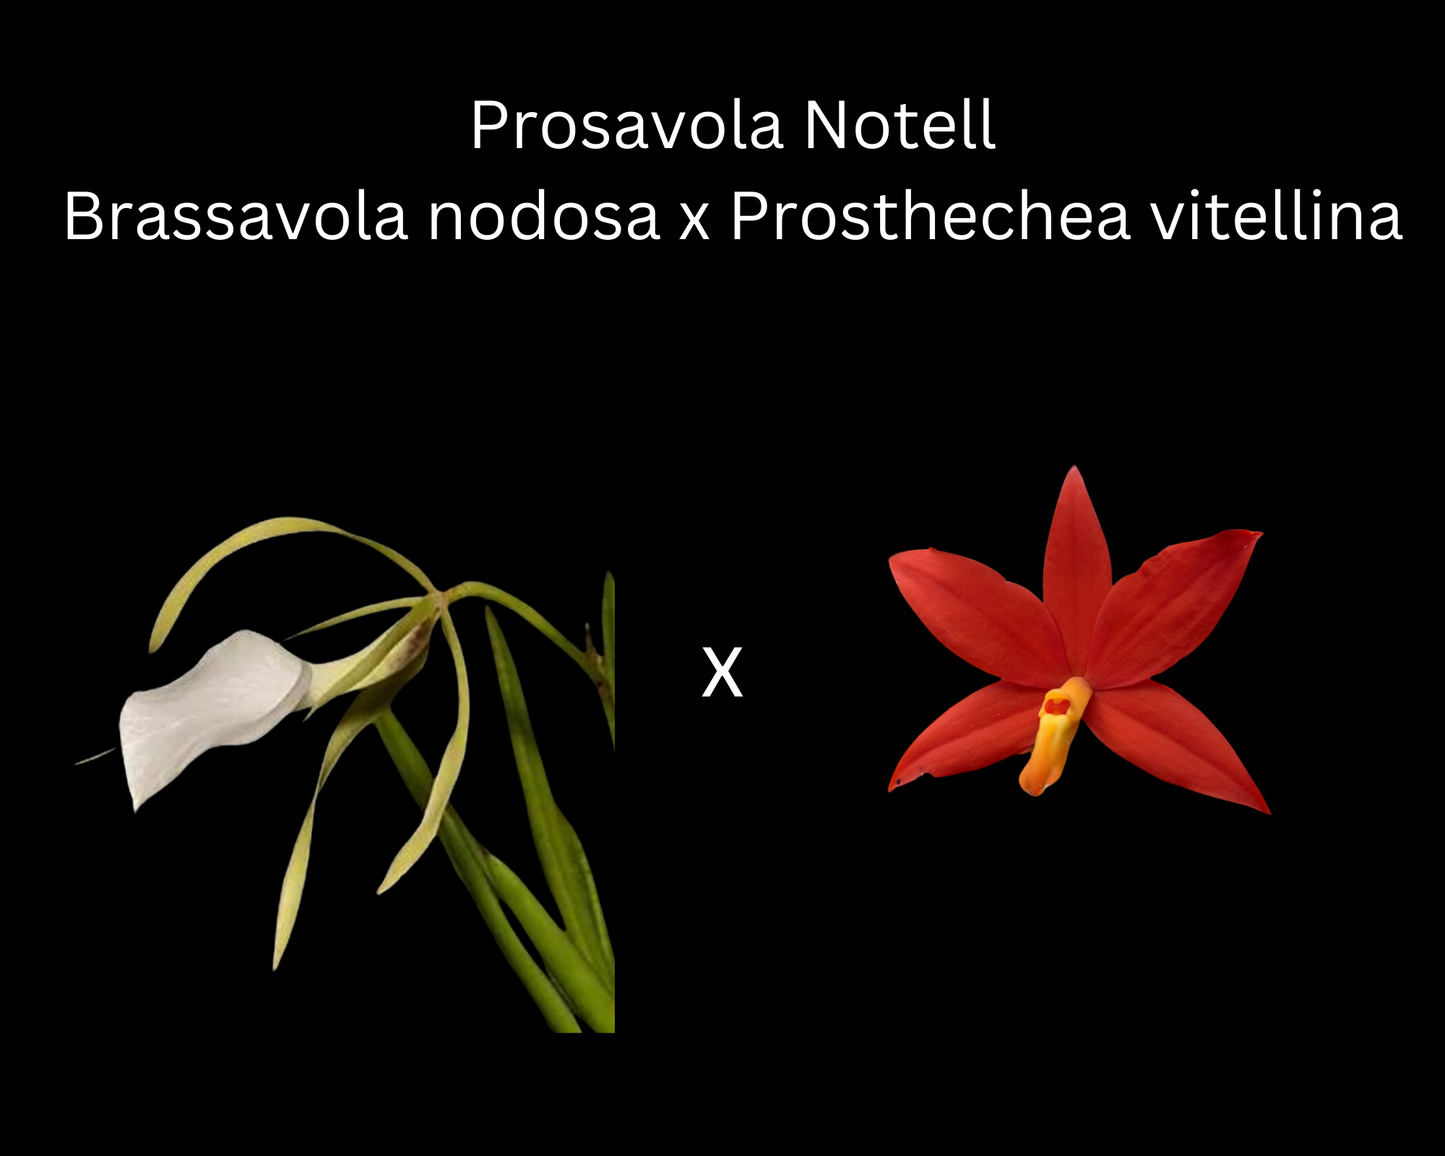 Brassavola nodosa 'Spring' x Prosthechea vitellina